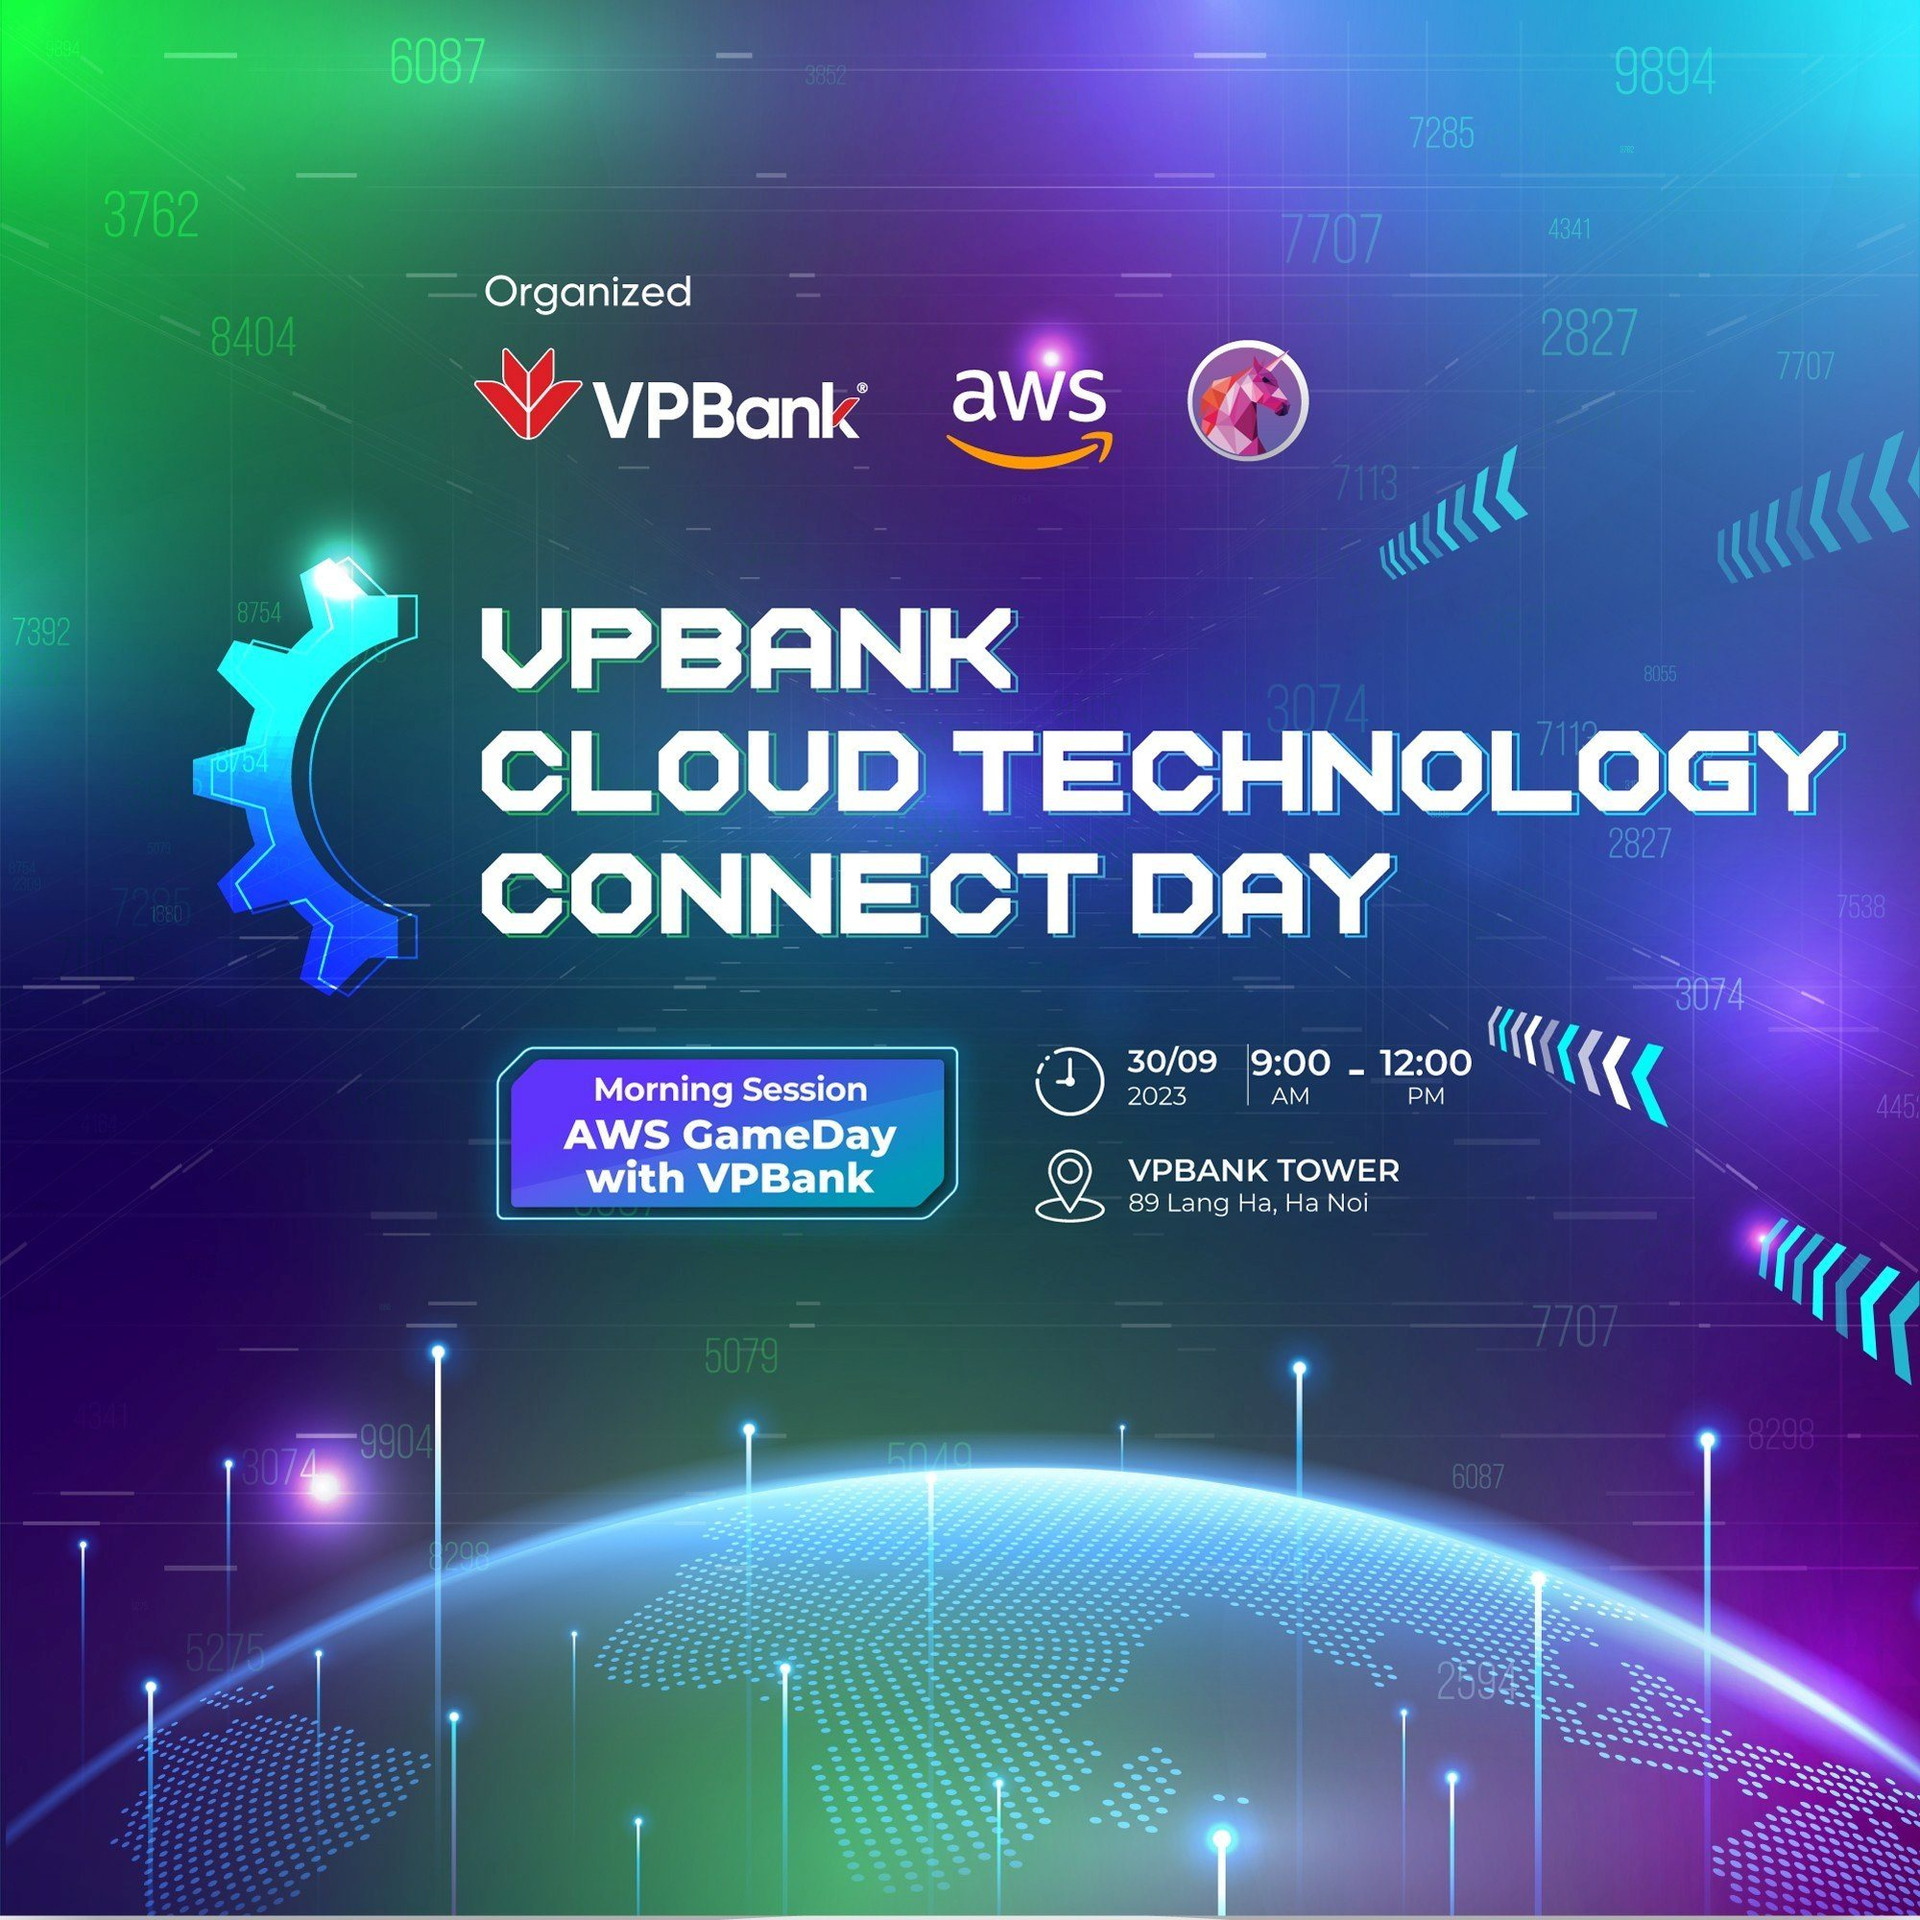 vpbank-cloud-technology-connect-day-su-kien-duoc-cac-chuyen-gia-cong-nghe-trong-linh-vuc-tai-chinh-ngan-hang-mong-doi.jpg